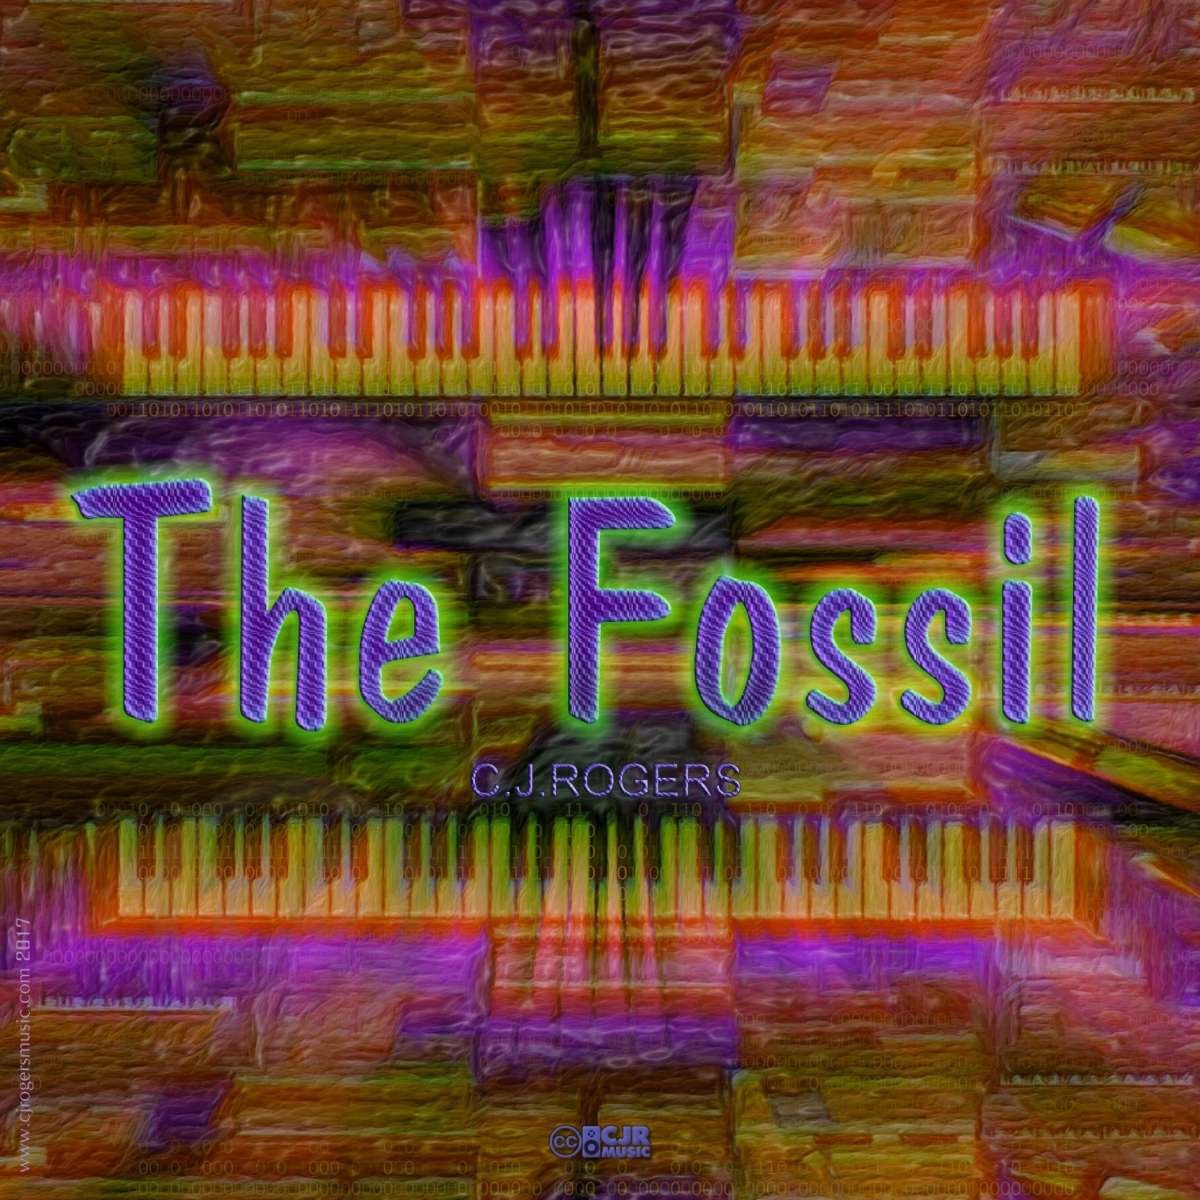 The Fossil - Fullsize Cover Art